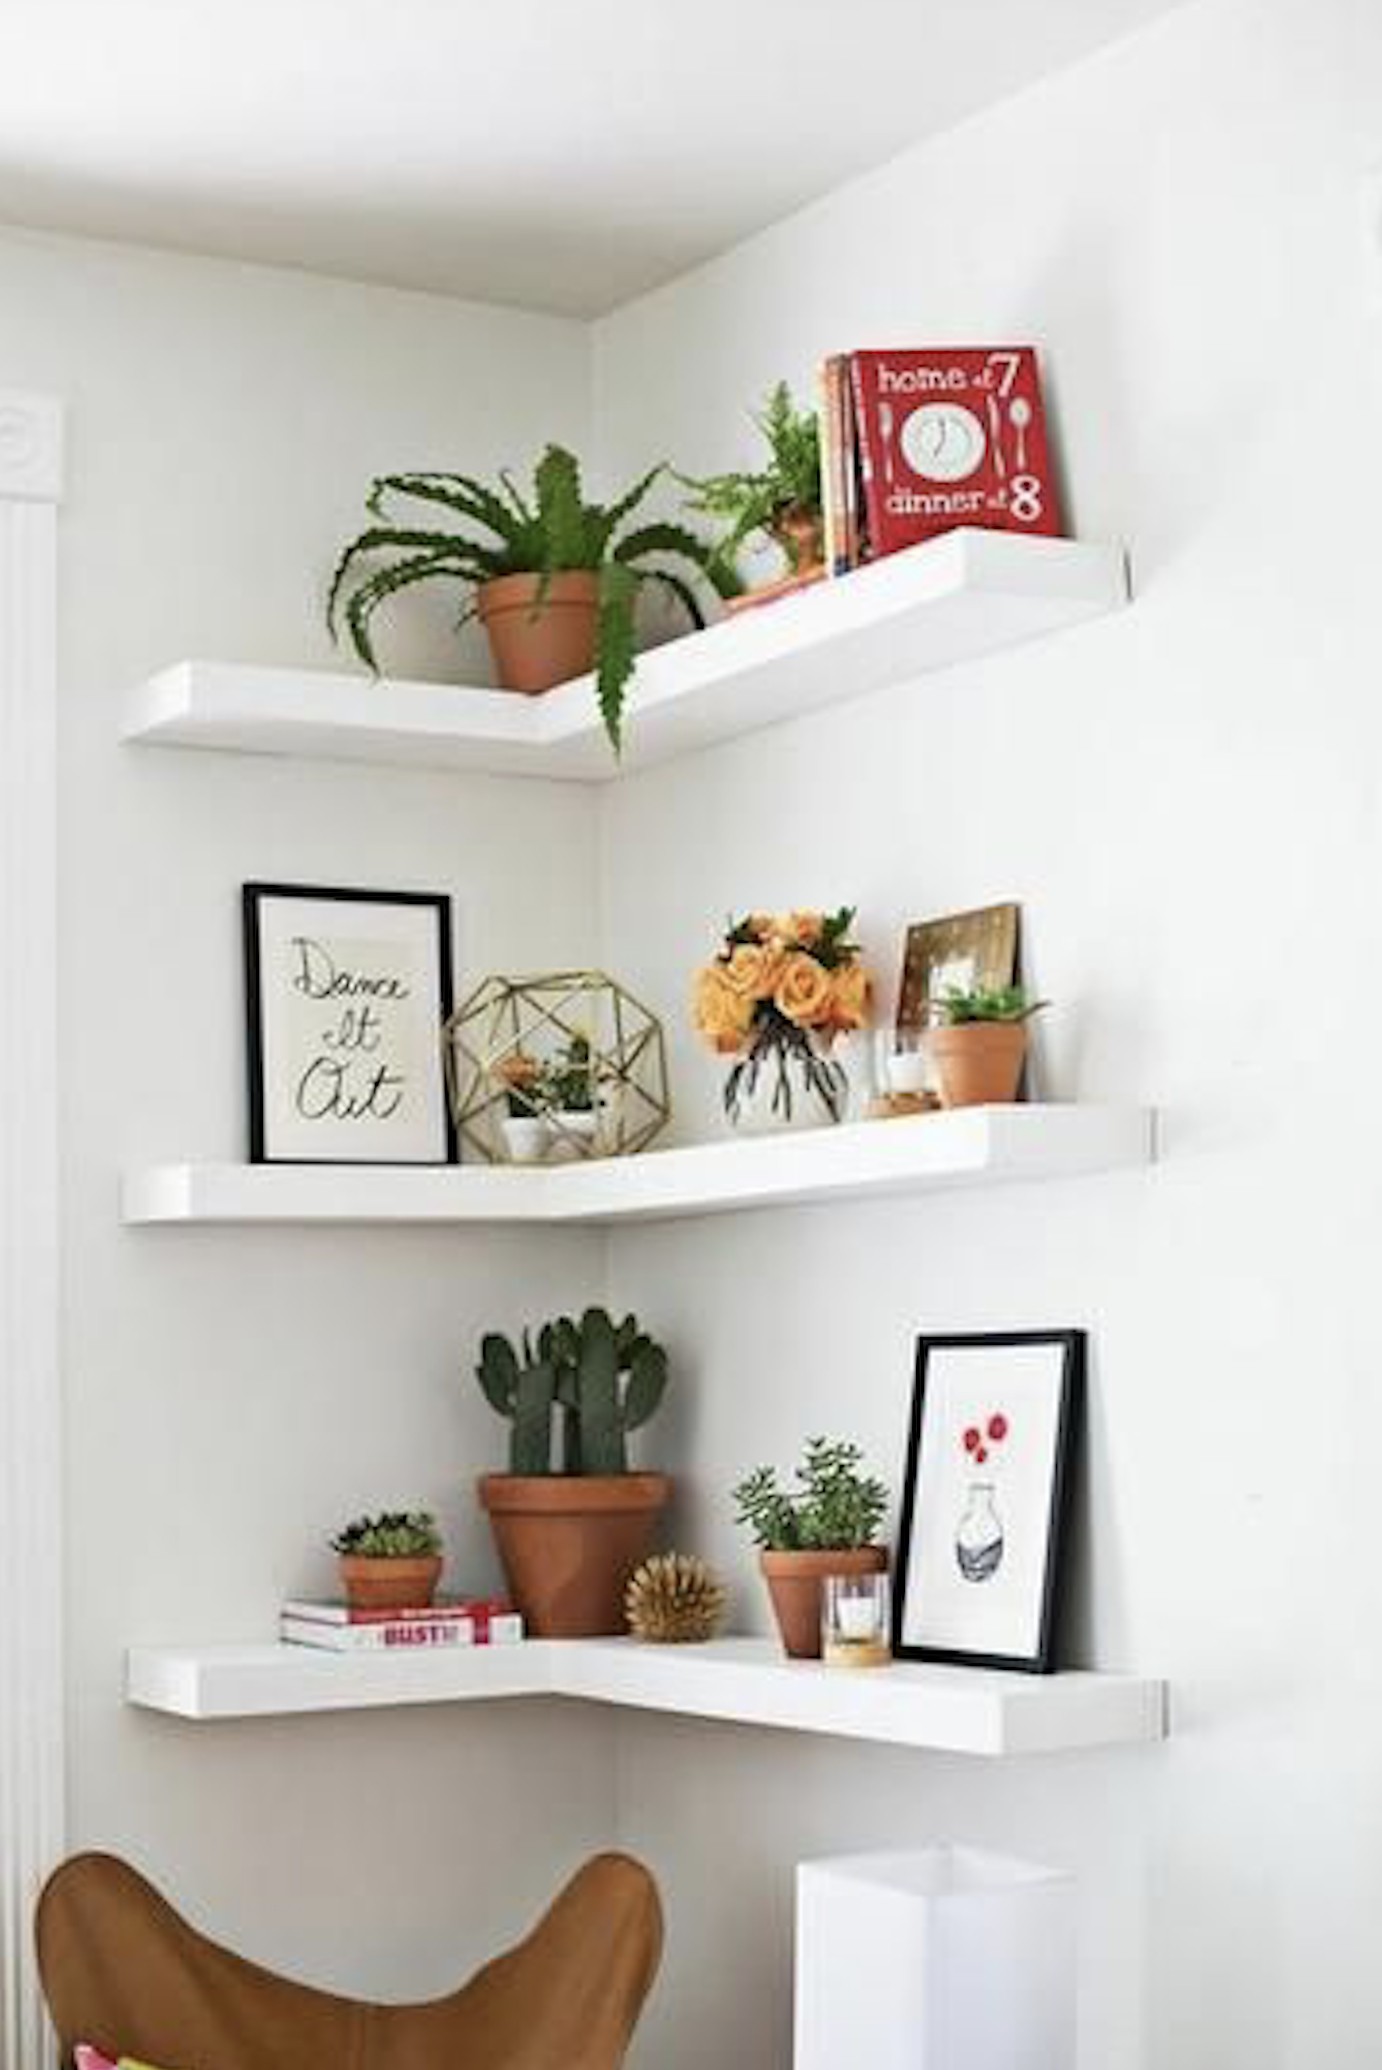 Corner floating shelves